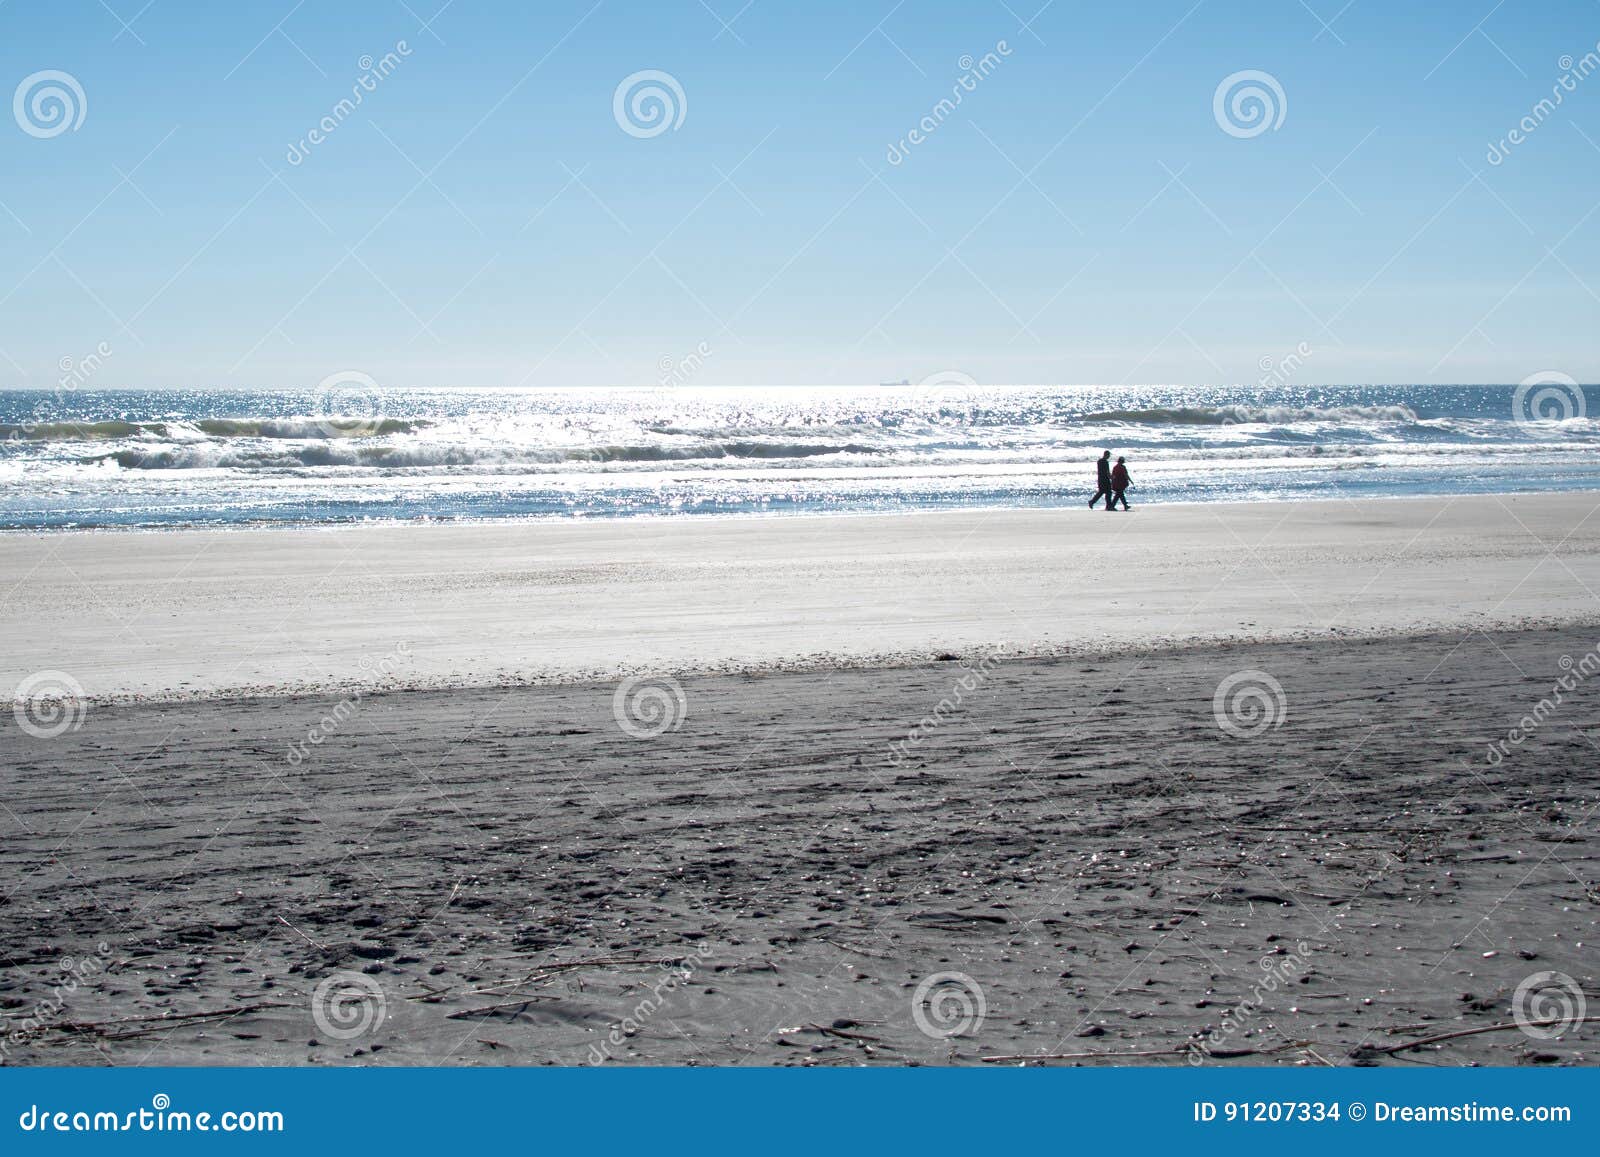 Coppia la camminata lungo il litorale su una spiaggia in Florida. Siluetta delle coppie che camminano lungo il litorale su una spiaggia in Florida con il sole che splende sull'acqua